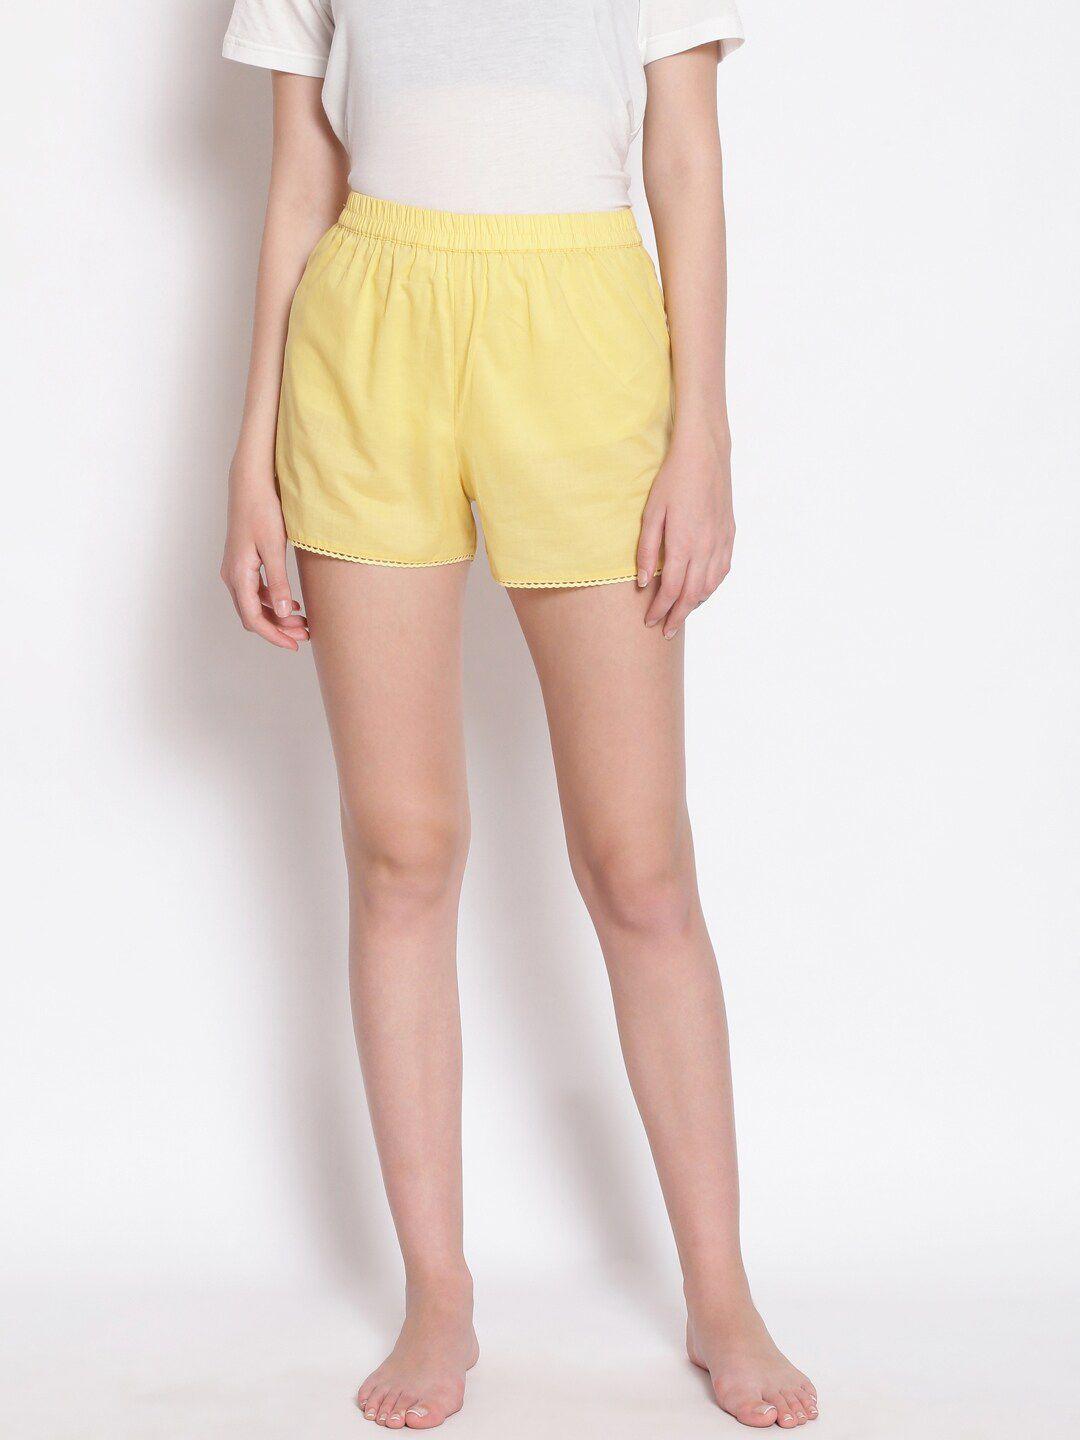 oxolloxo-women-yellow-lounge-cotton-shorts